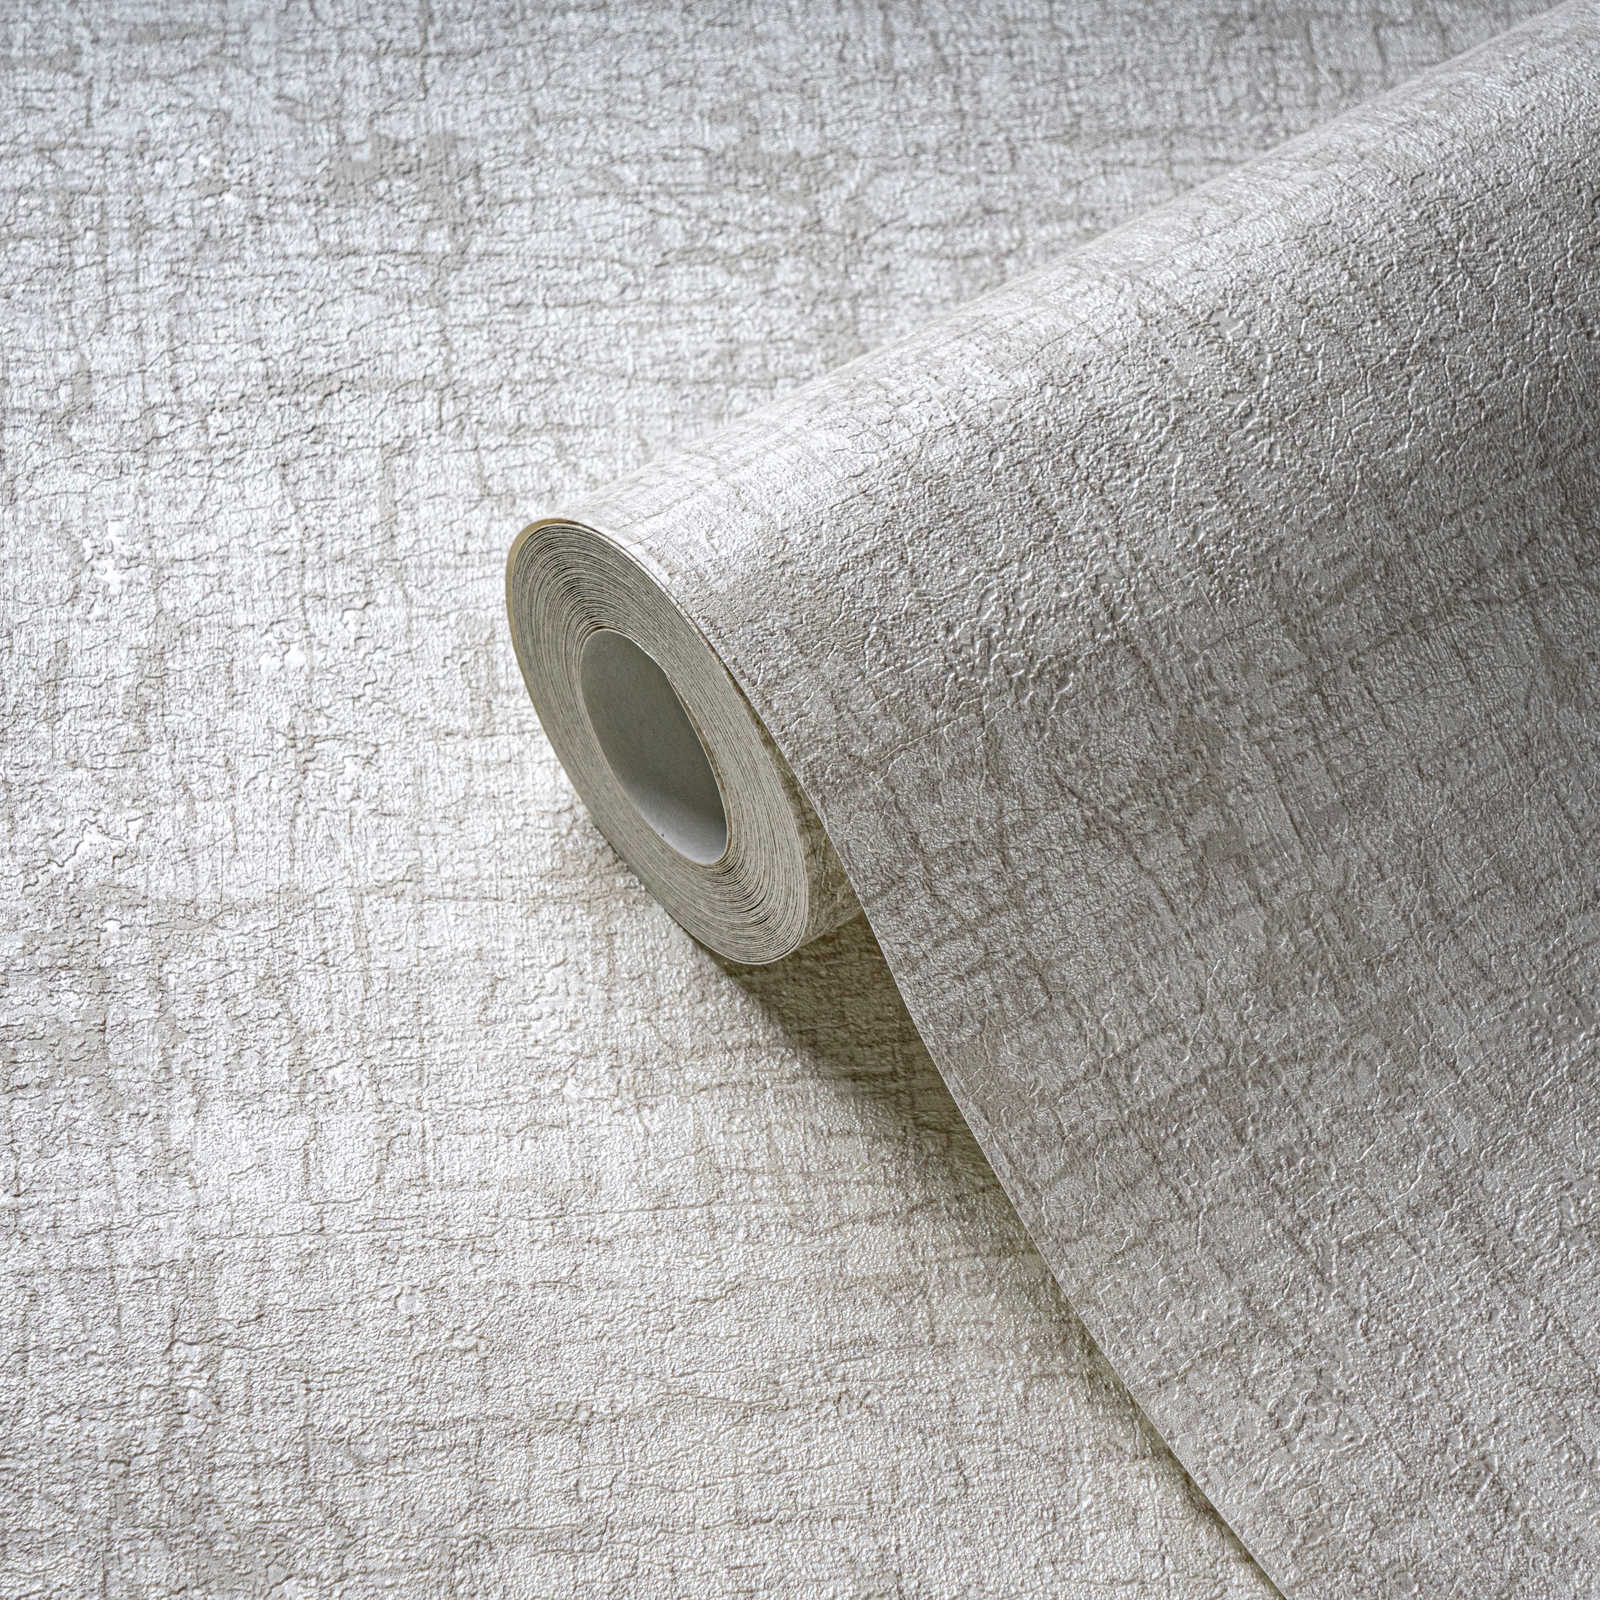             Vliestapete mit Struktur in sanften Farben Textiloptik – Weiß, Beige, Creme
        